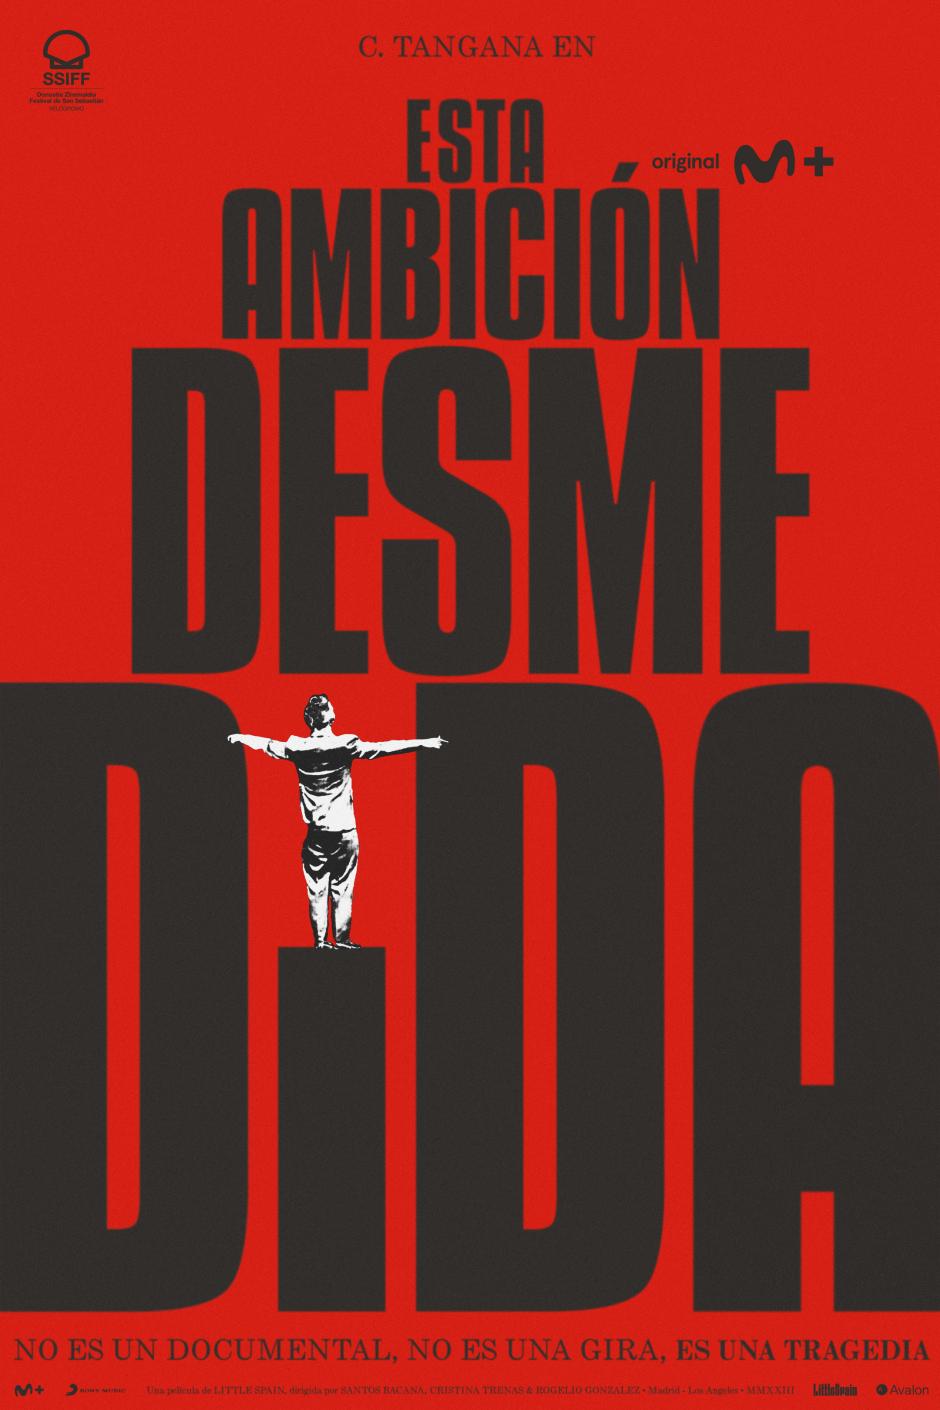 Cartel oficial de la película documental 'Esta ambición desmedida', de C. Tangana